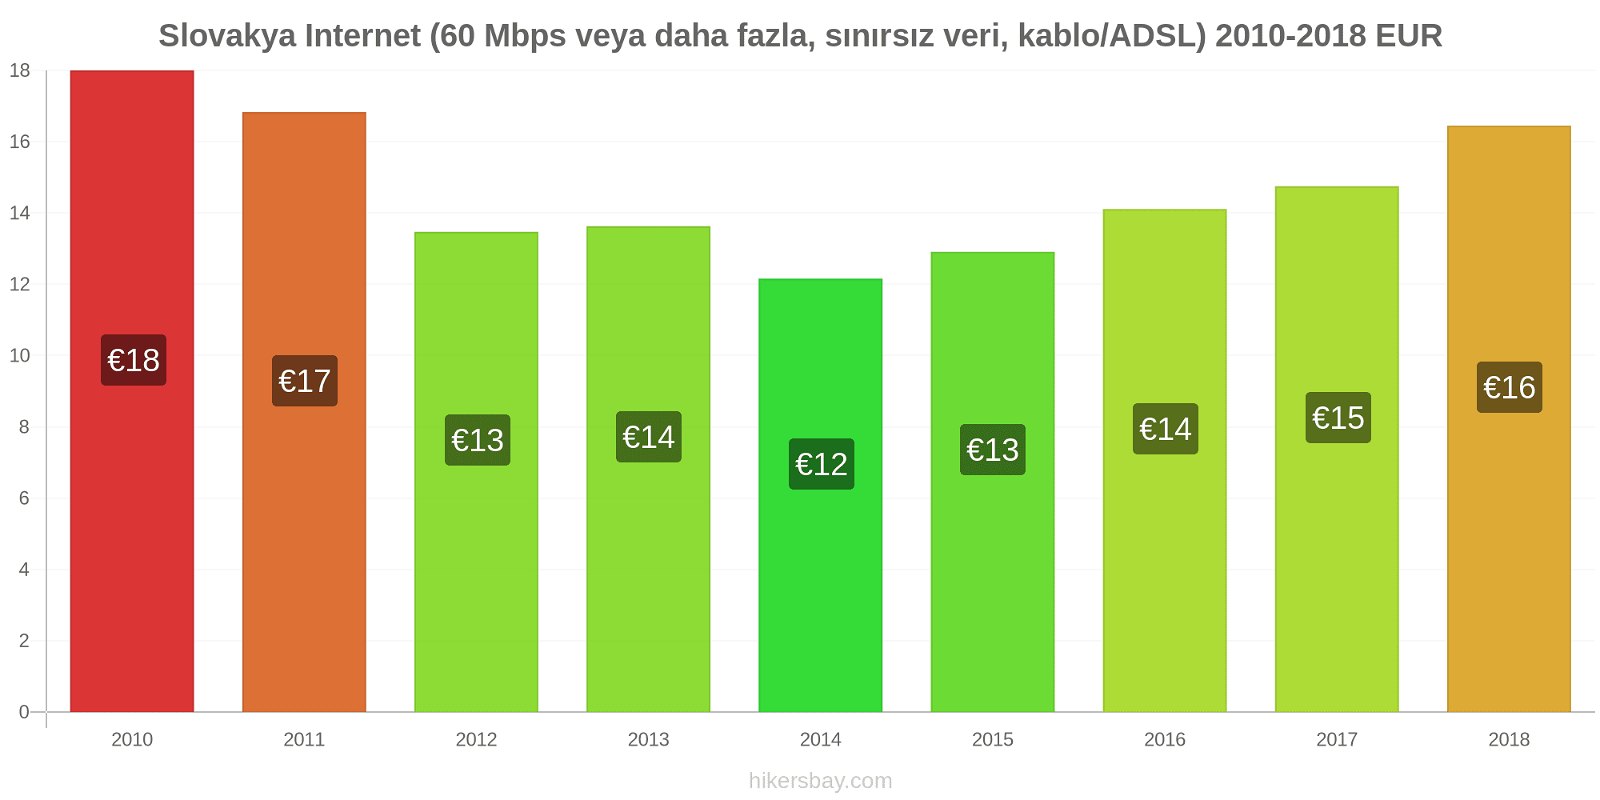 Slovakya fiyat değişiklikleri İnternet (60 Mbps veya daha fazla, sınırsız veri, kablo/ADSL) hikersbay.com